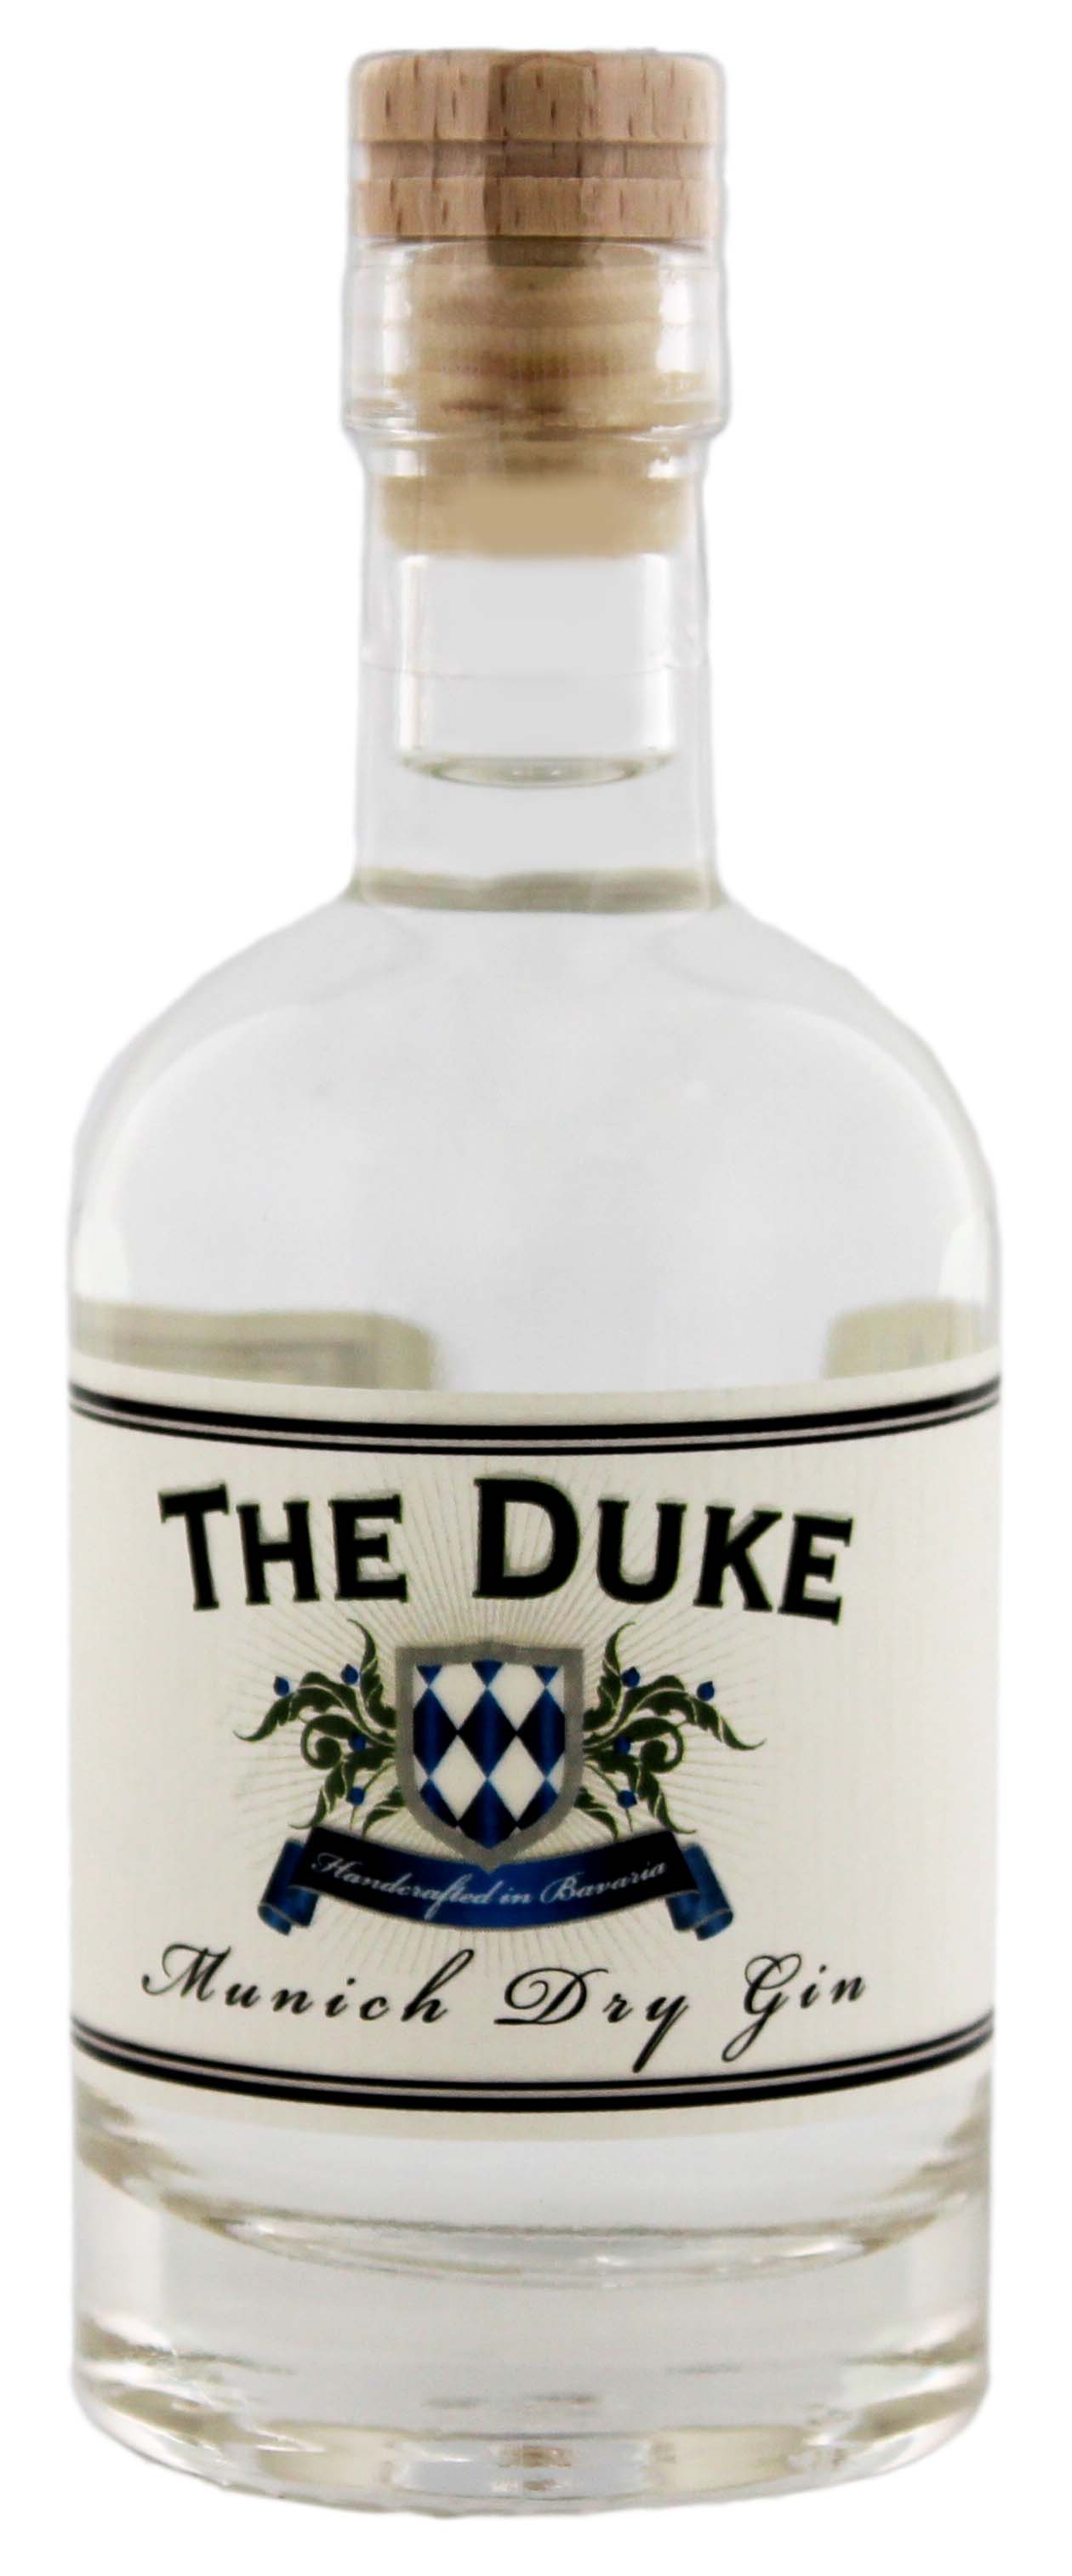 The Duke Munich Dry Gin jetzt kaufen! Gin Online Shop & Spirituosen